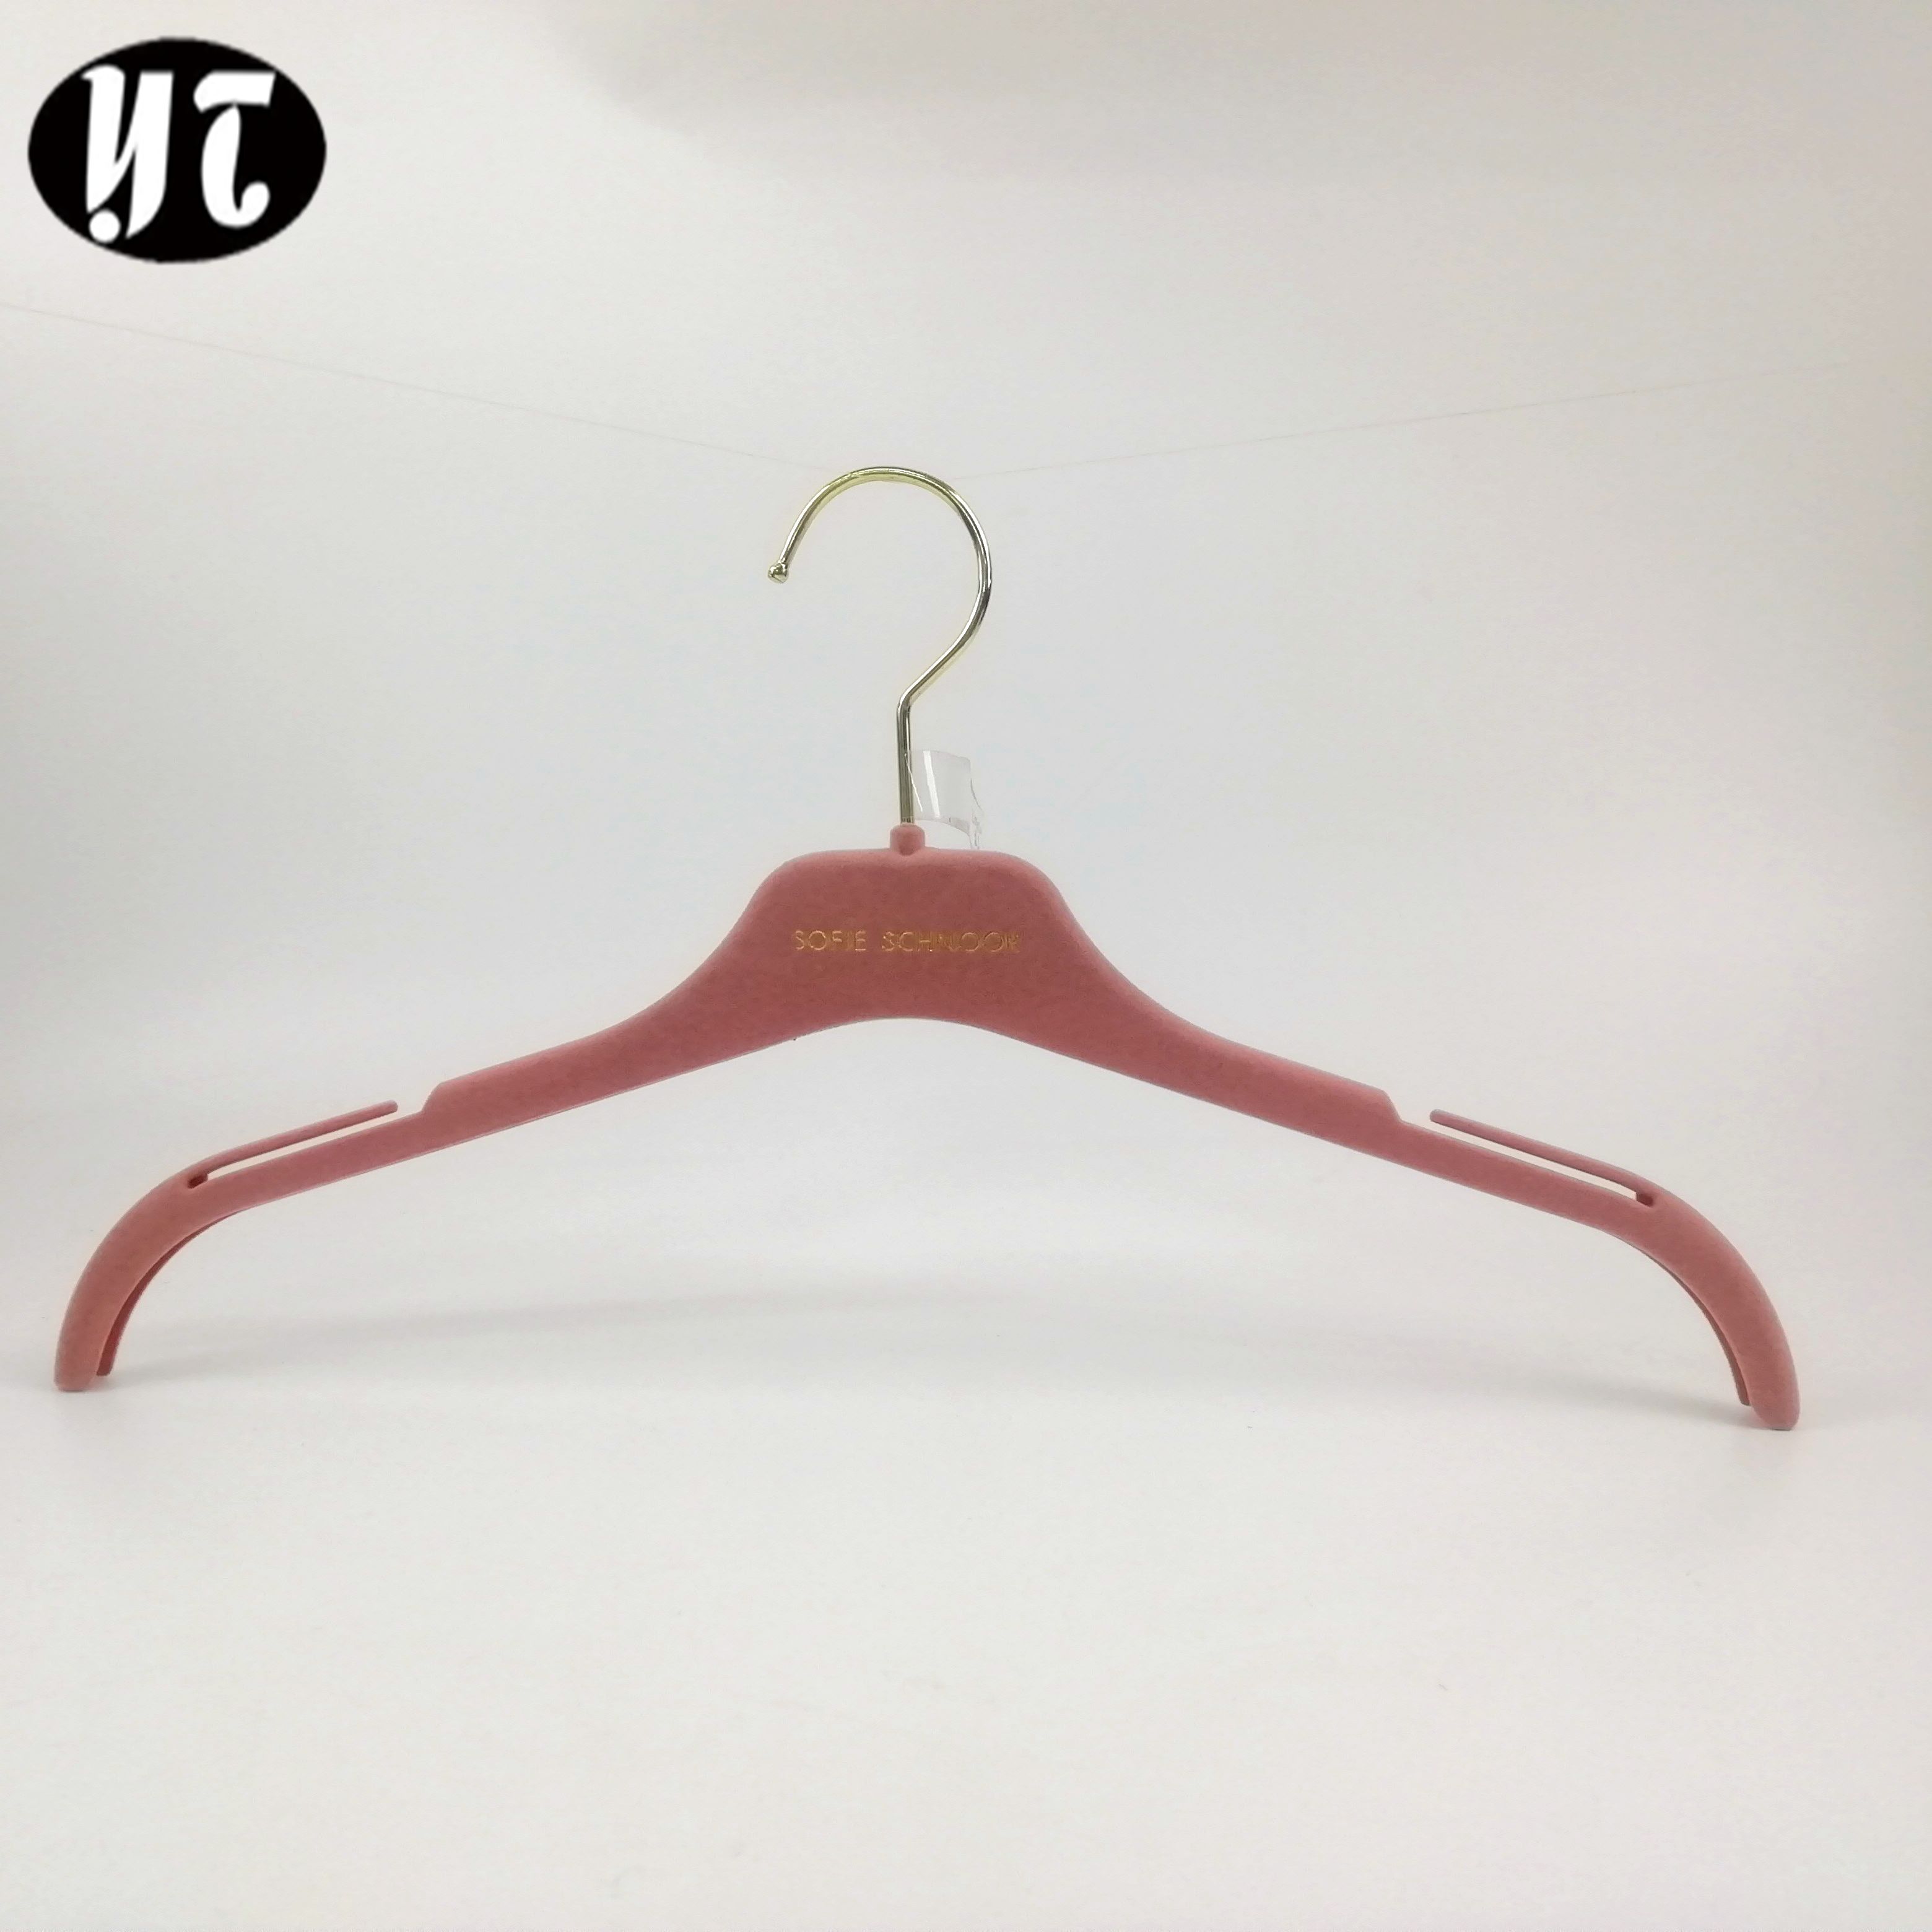 Pink velvet plastic coat hanger for convenient supplier of hangers in China